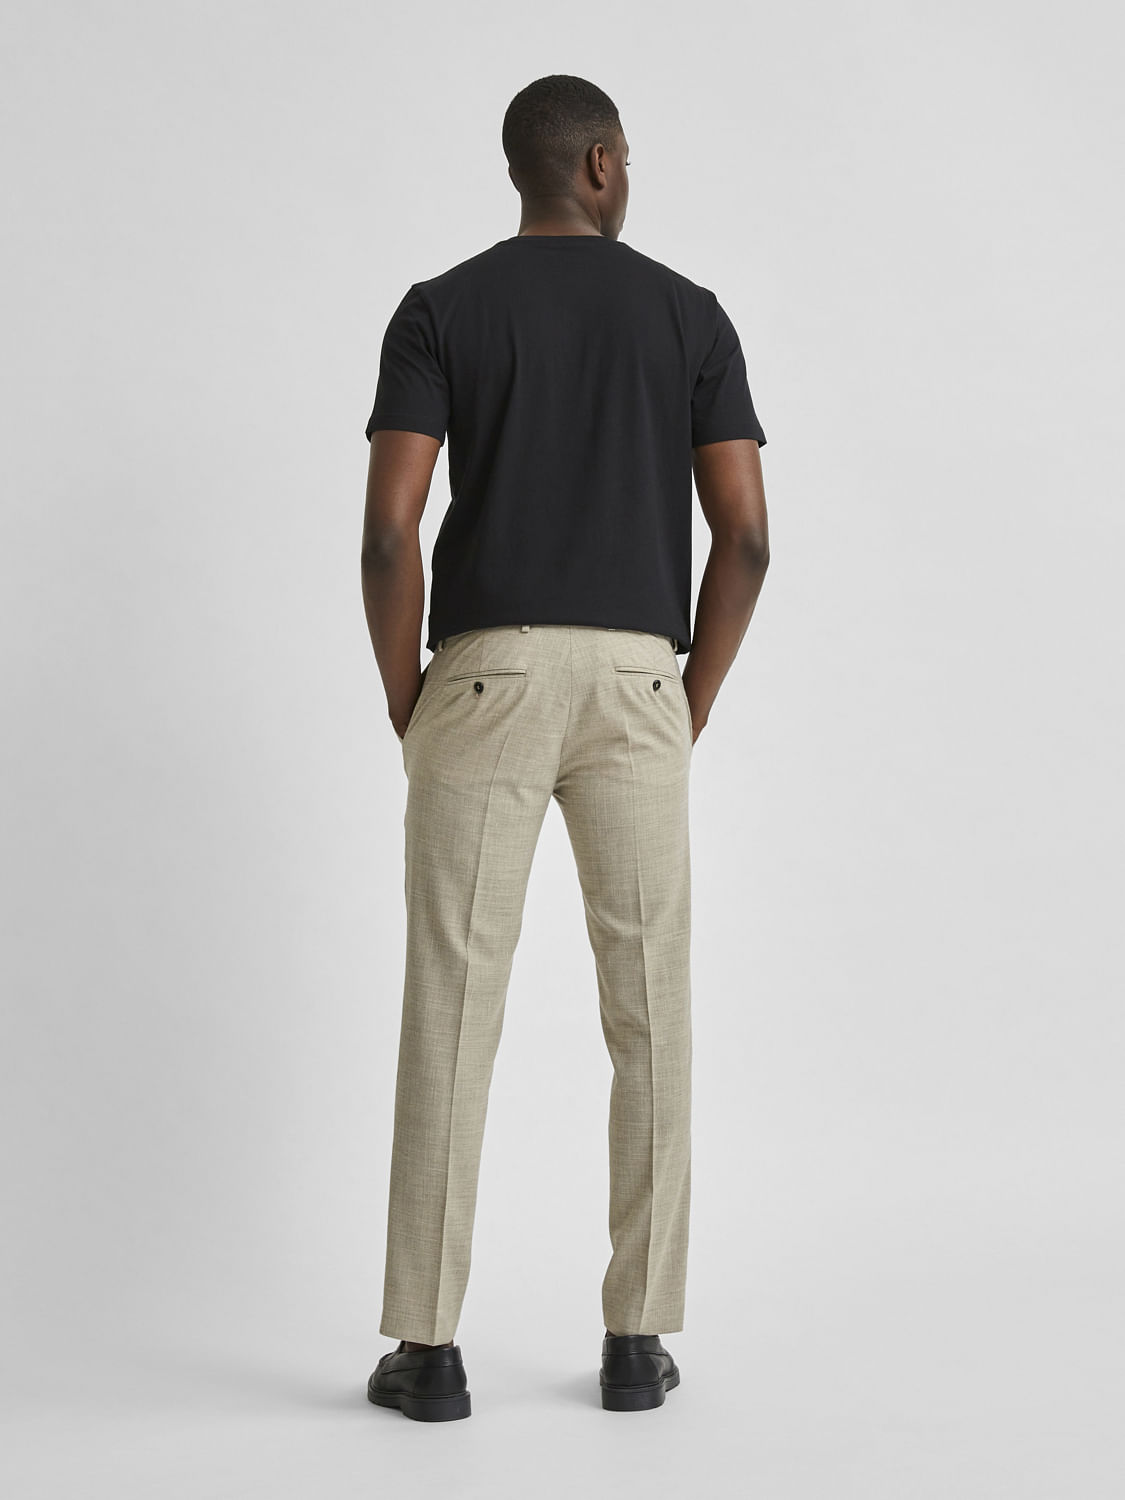 Buy Plaid&Plain Men's Stretch Dress Pants Slim Fit Skinny Suit Pants 7104  Black 27W28L at Amazon.in